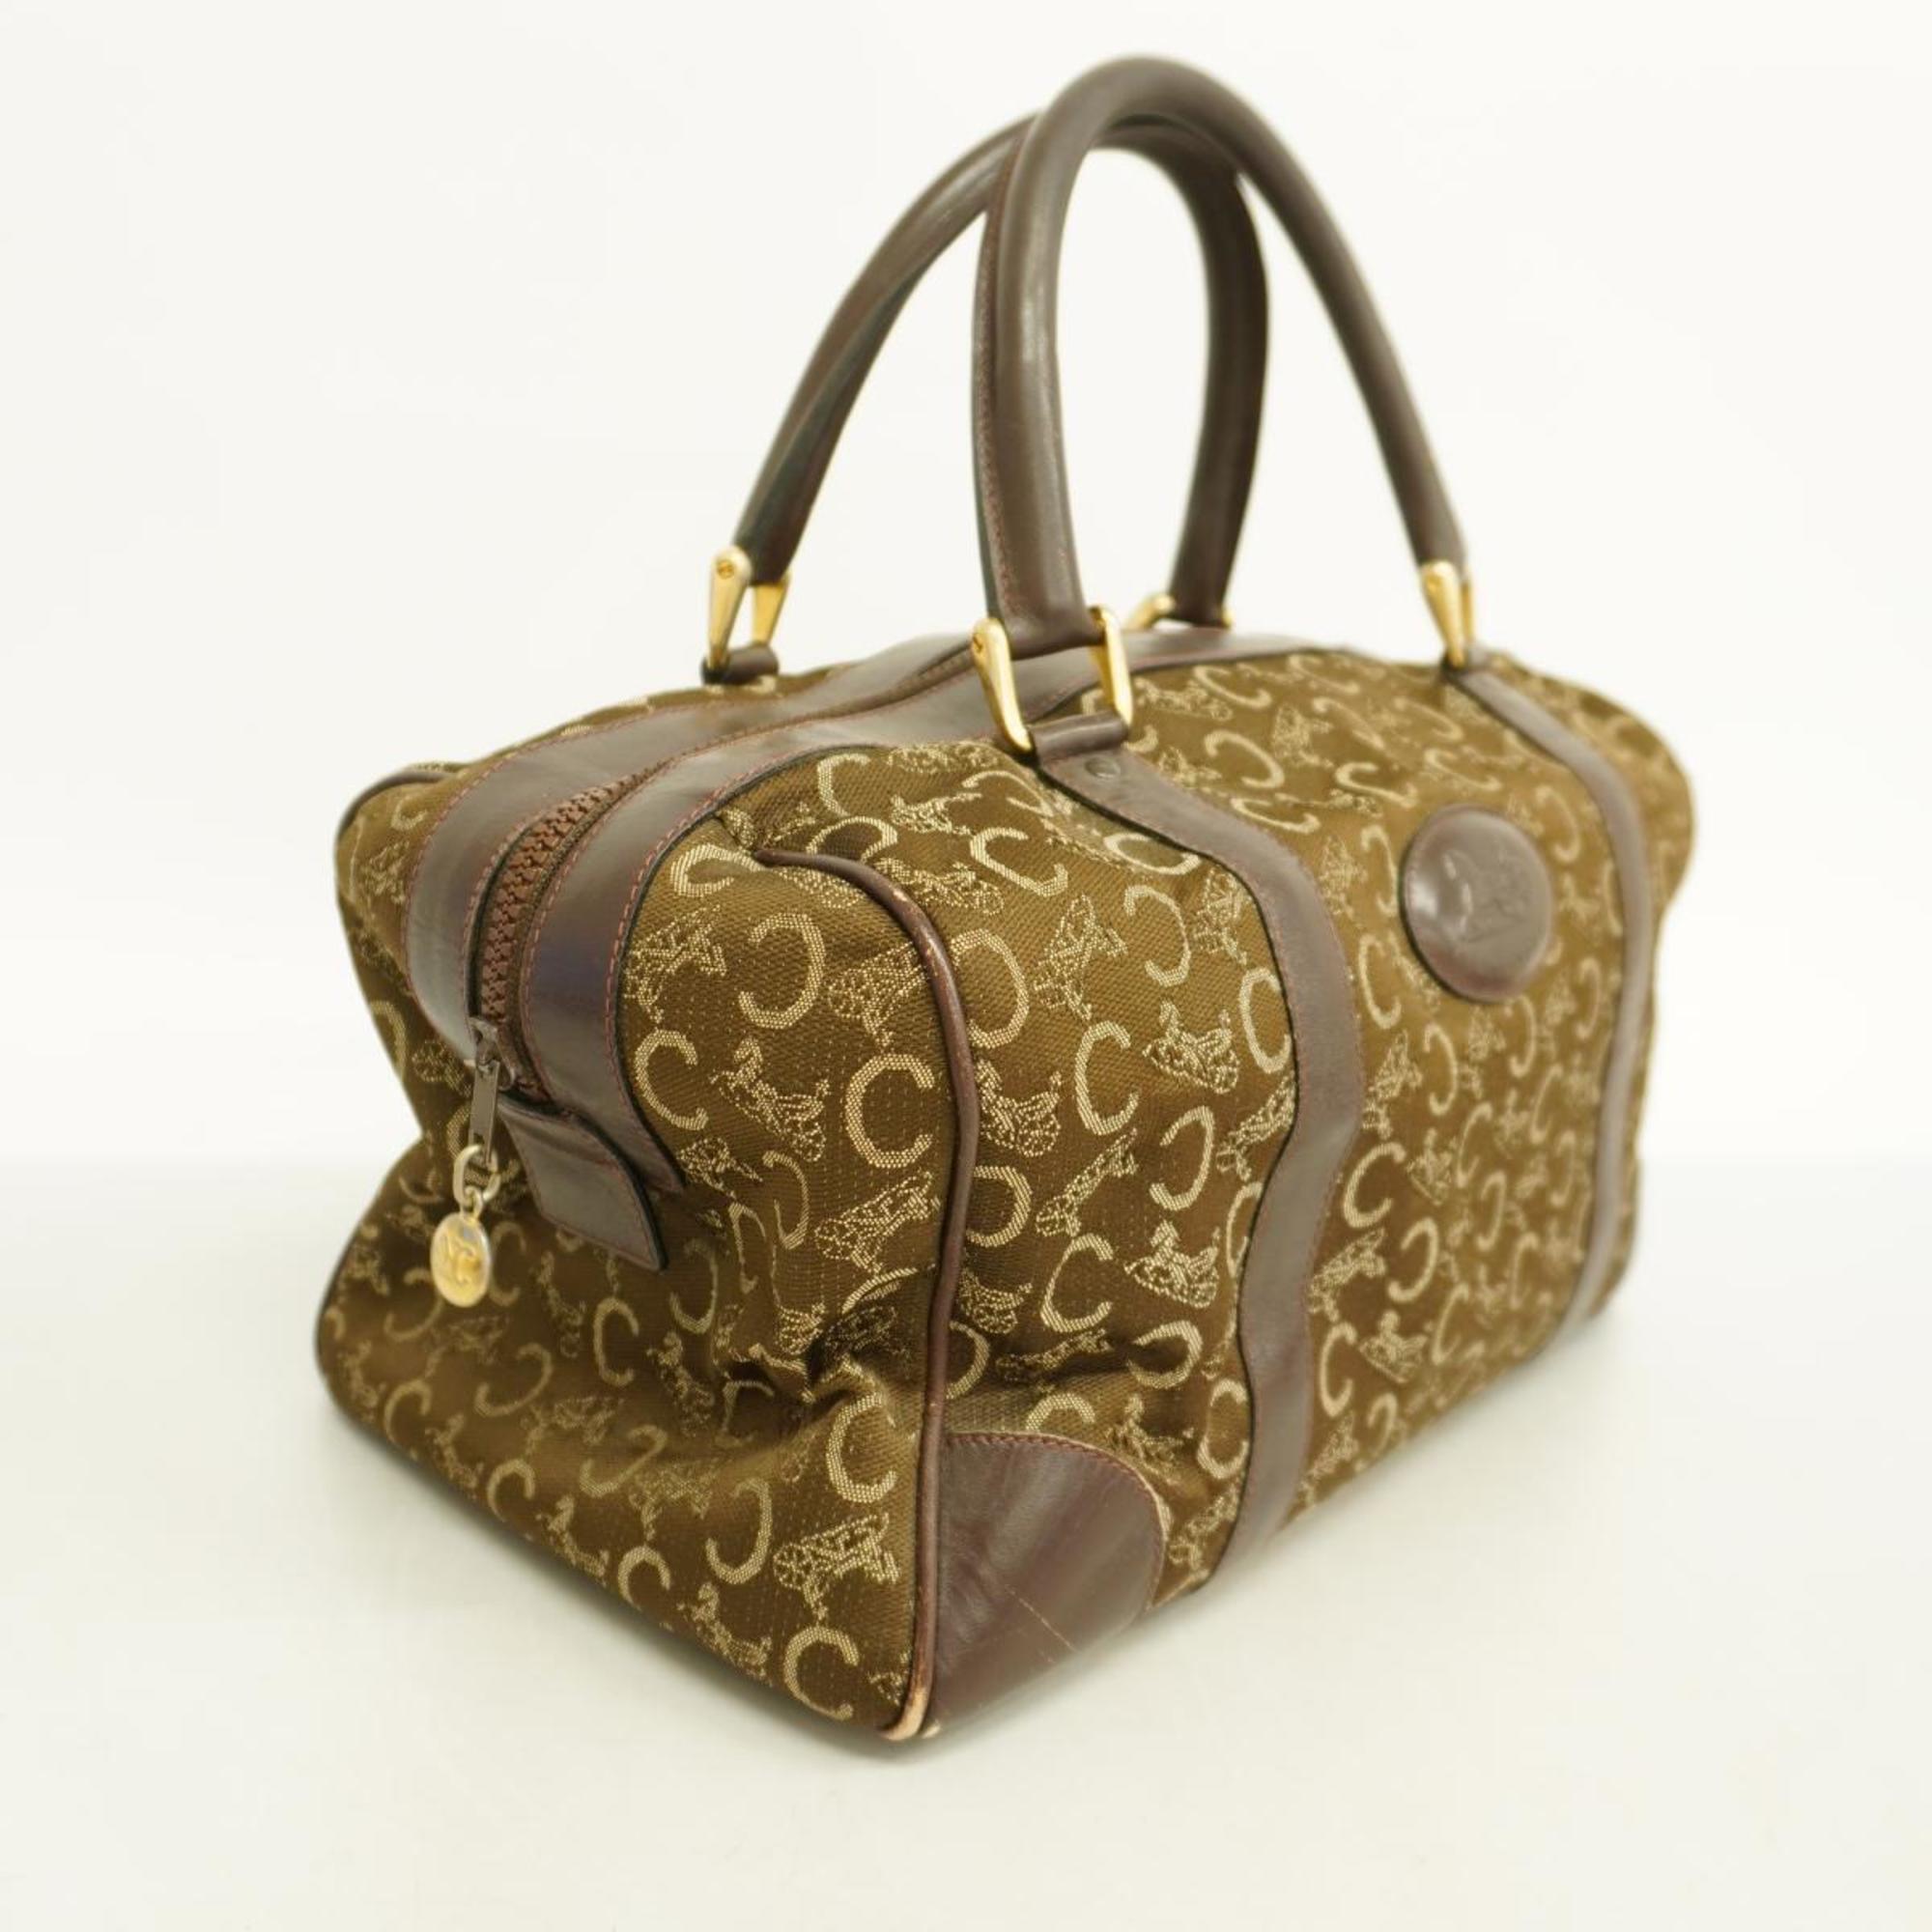 Celine handbag C Macadam canvas brown ladies